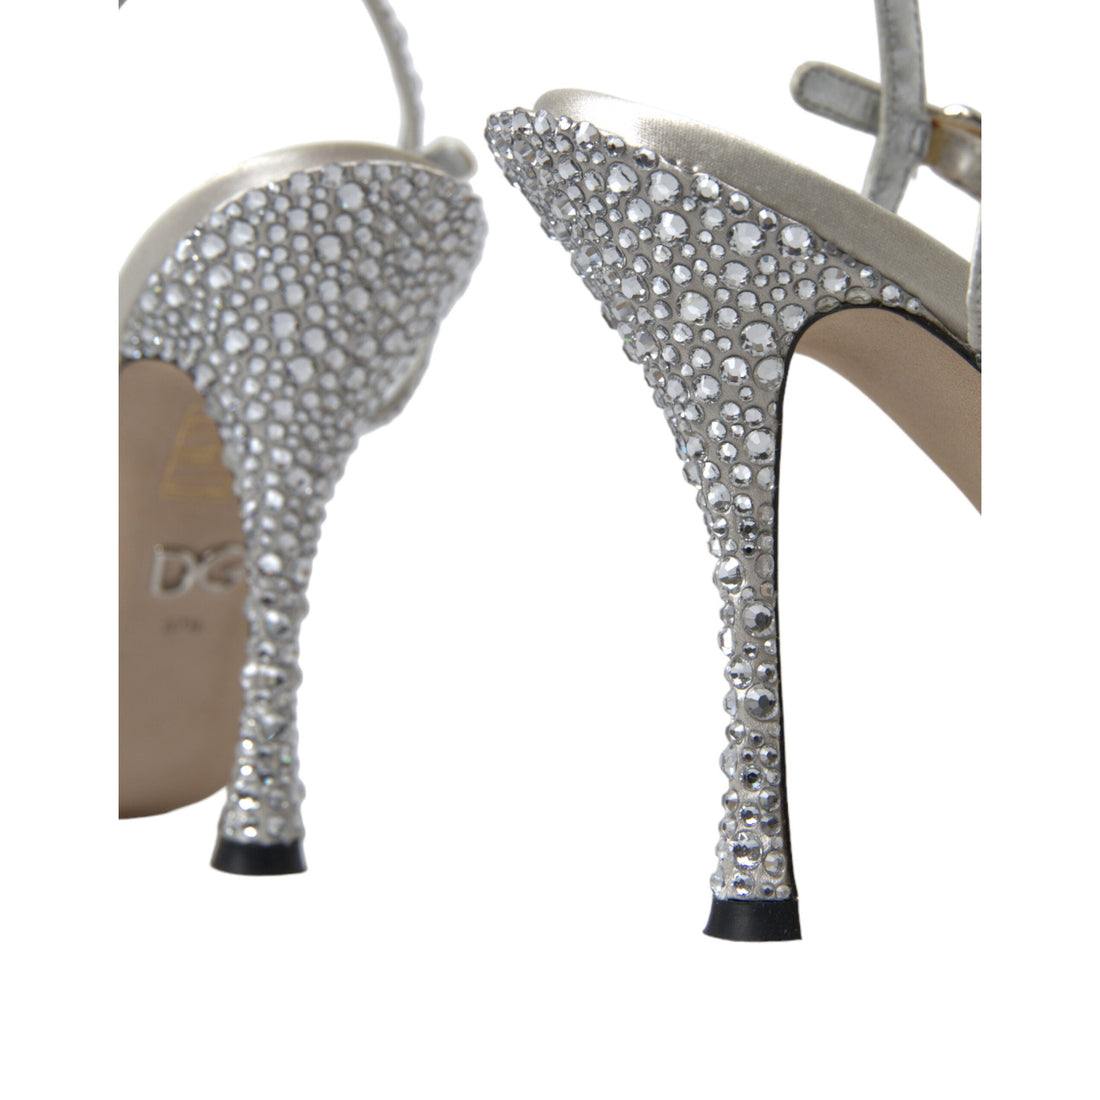 Dolce & Gabbana Elegant Crystal Embellished Heels Sandals